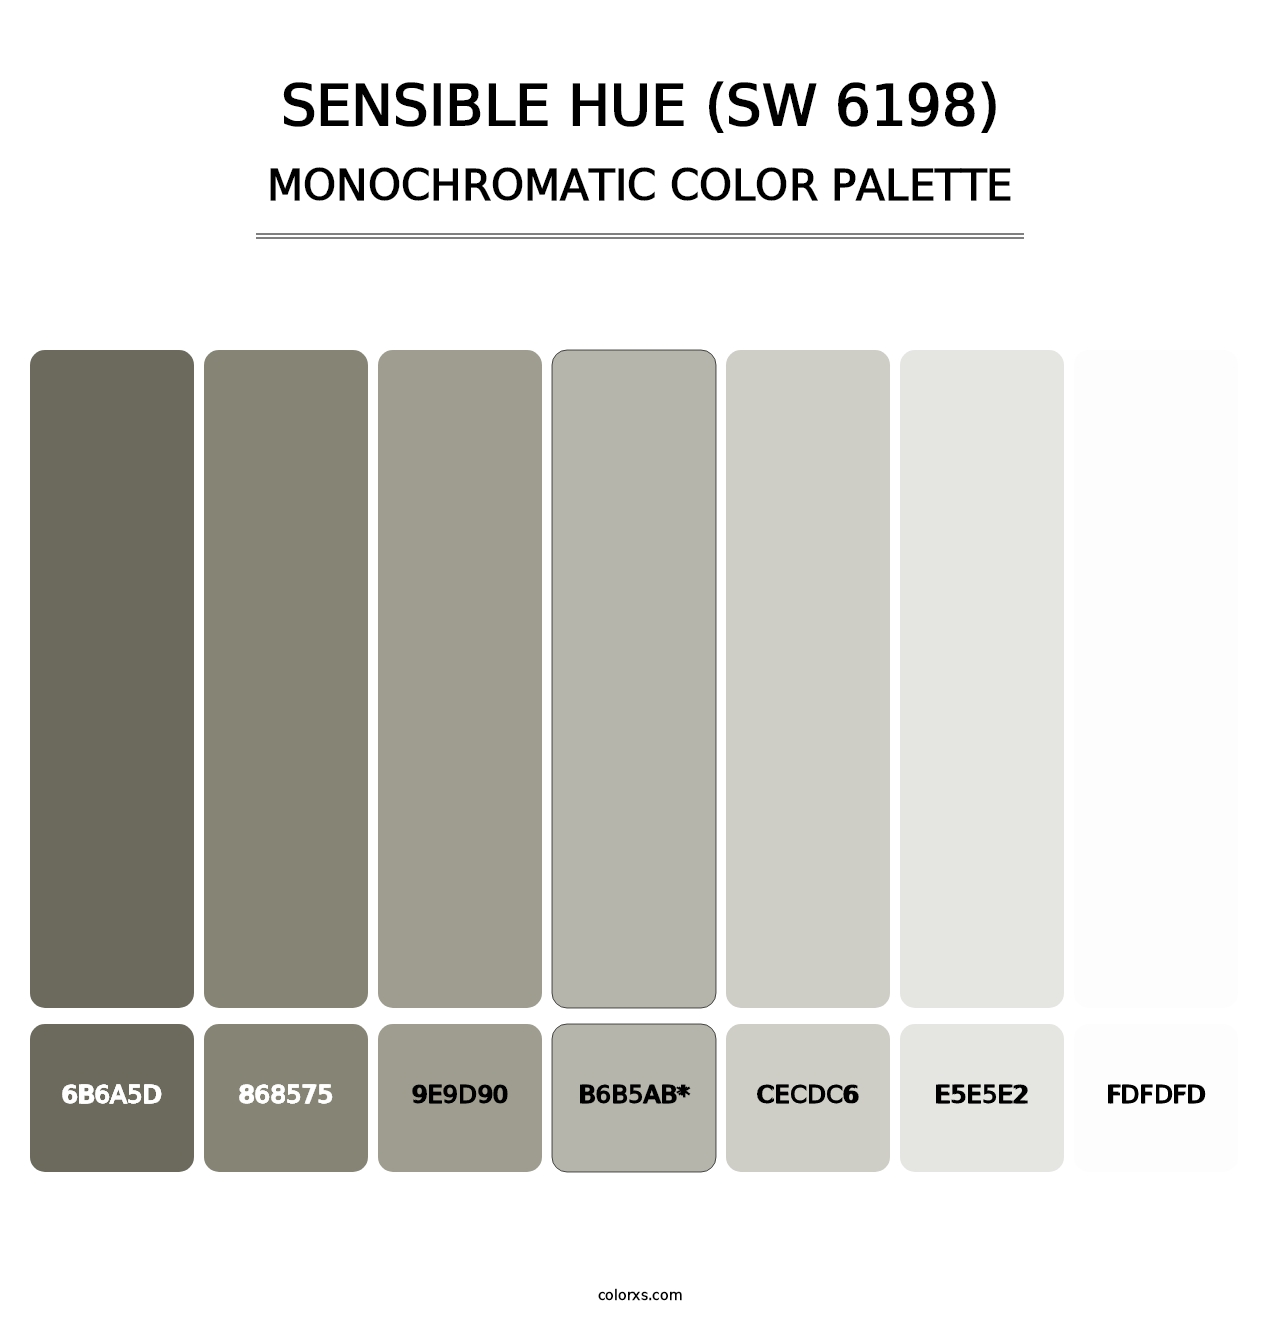 Sensible Hue (SW 6198) - Monochromatic Color Palette